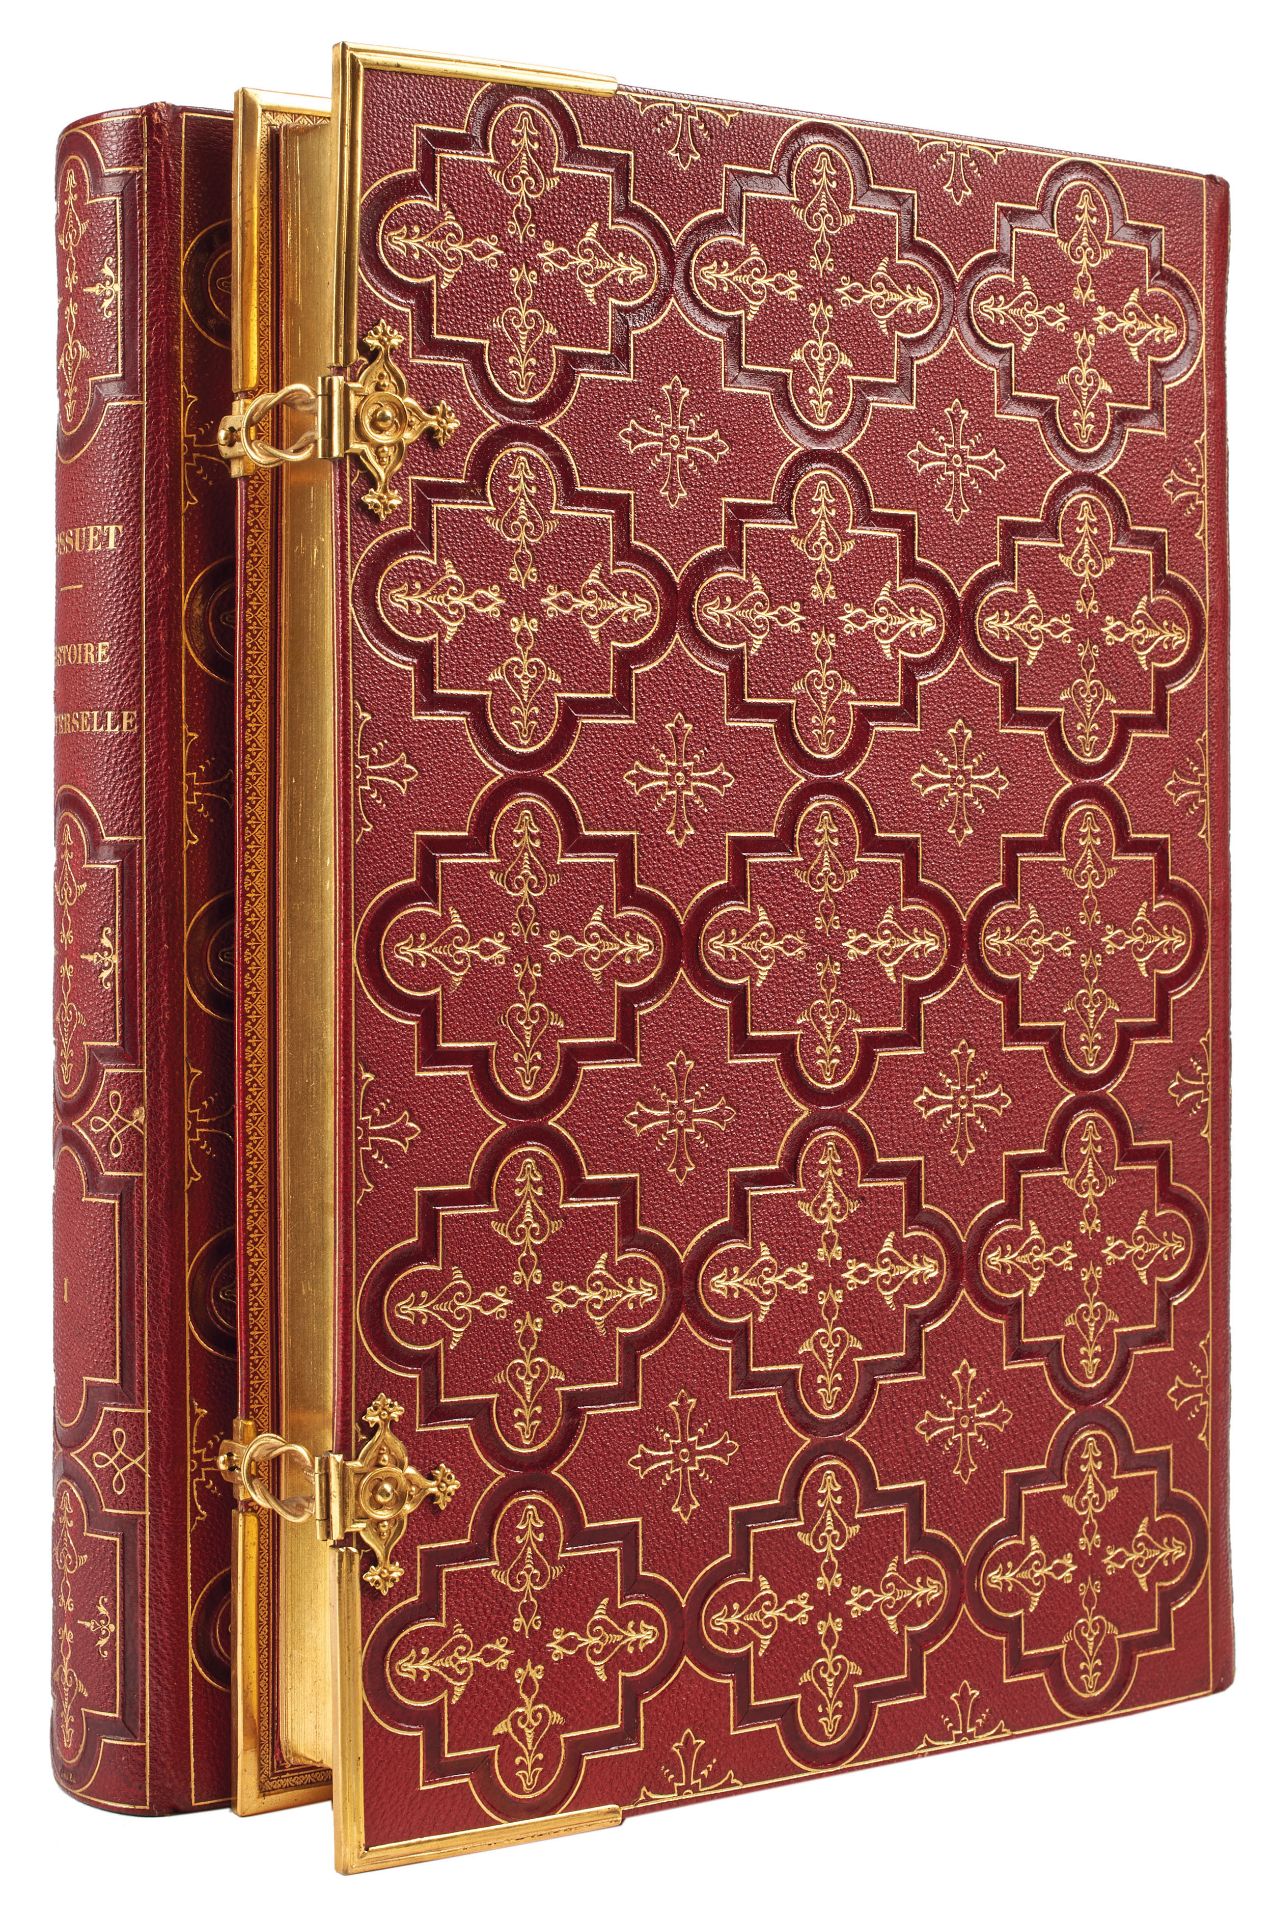 [BINDING] BOSSUET, Jacques-Benigne (1627-1704). Discours sur l'histoire universelle. Paris: L.